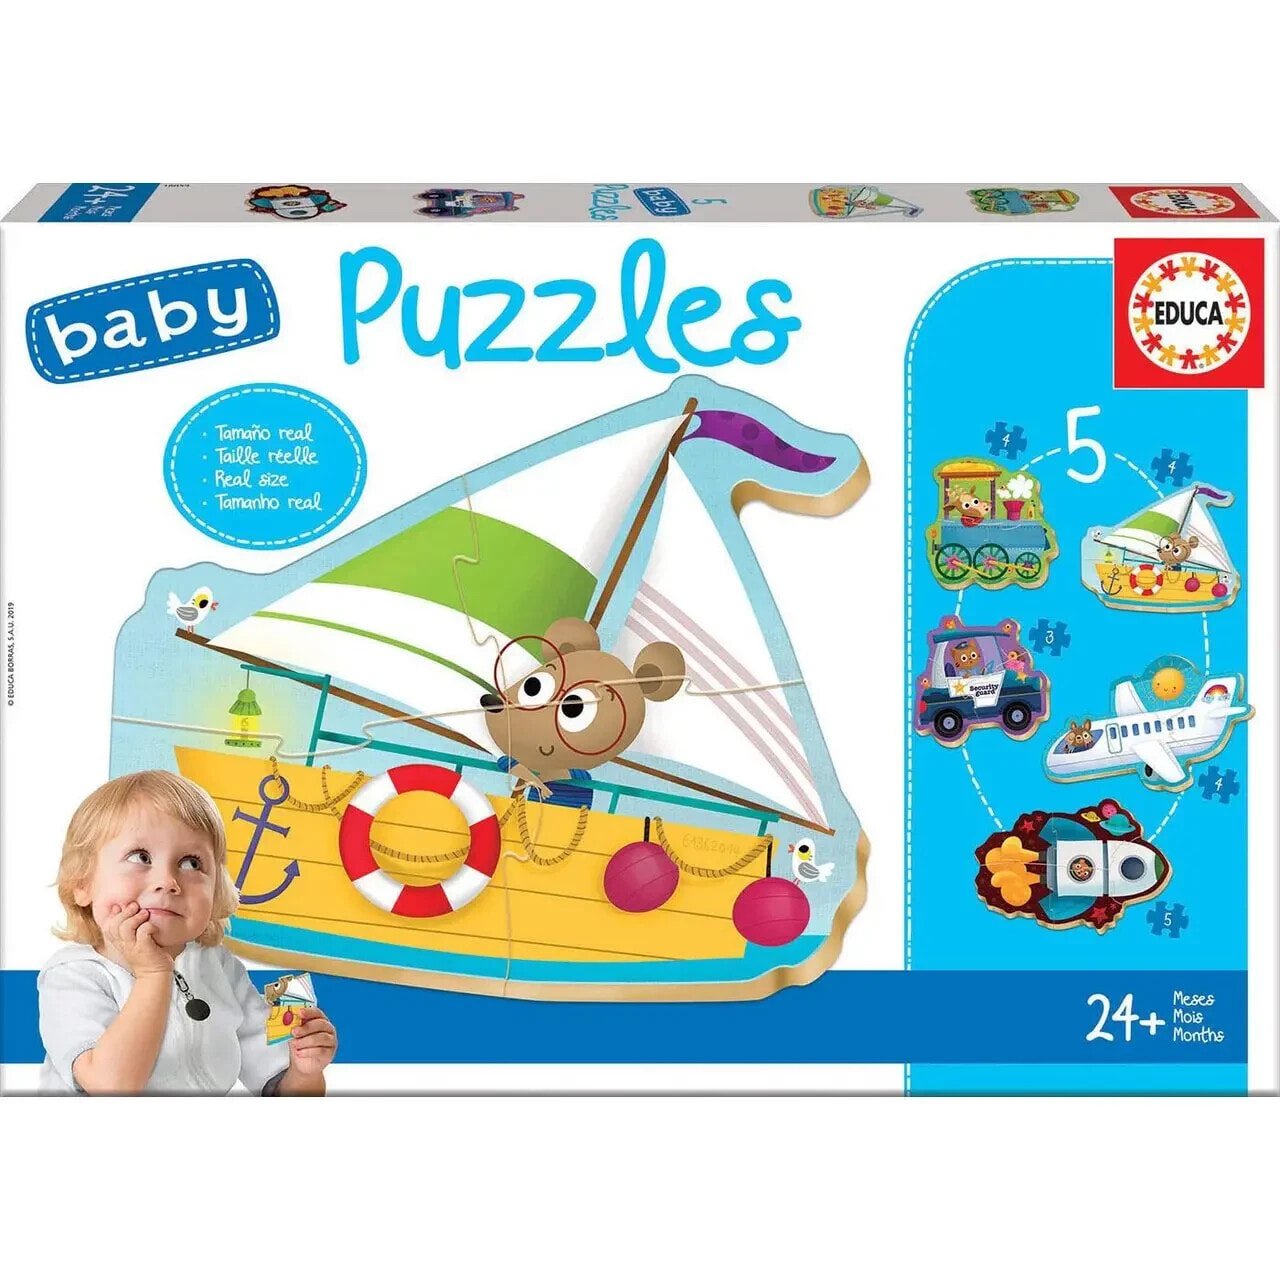 Puzzle 5 Babypuzzles